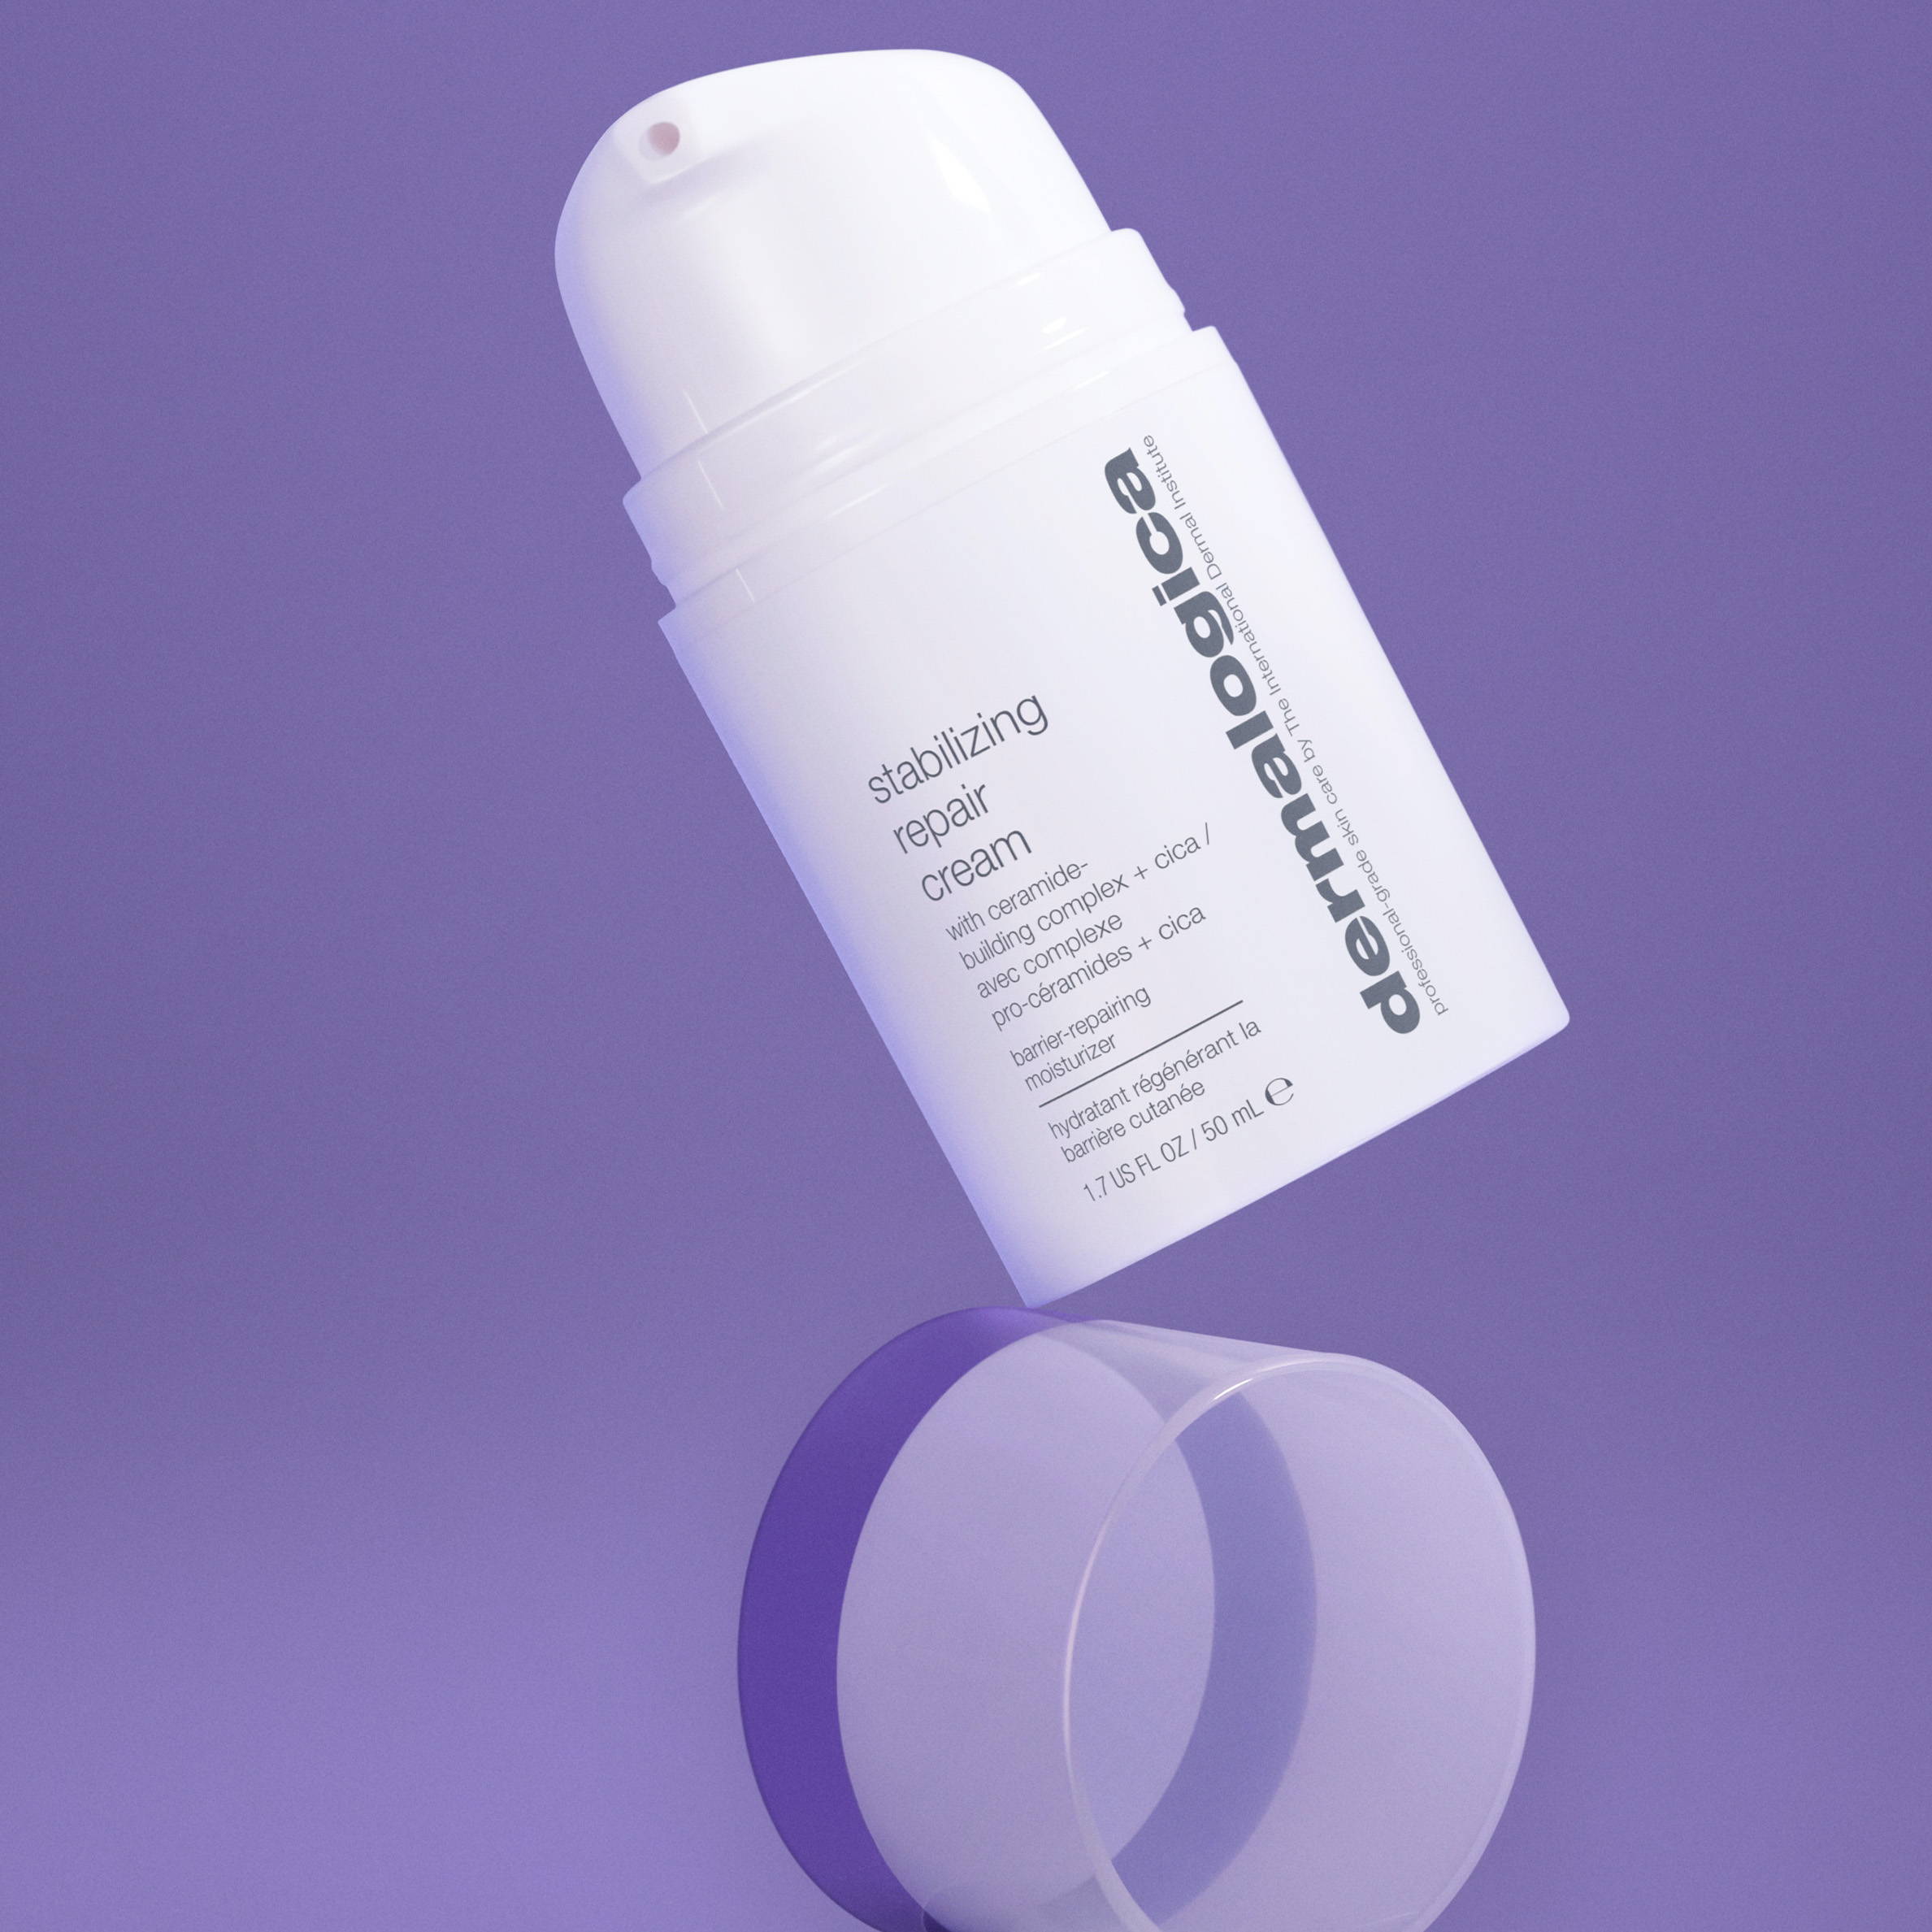 Image of Dermalogica's Stabilizing Repair Cream against purple background